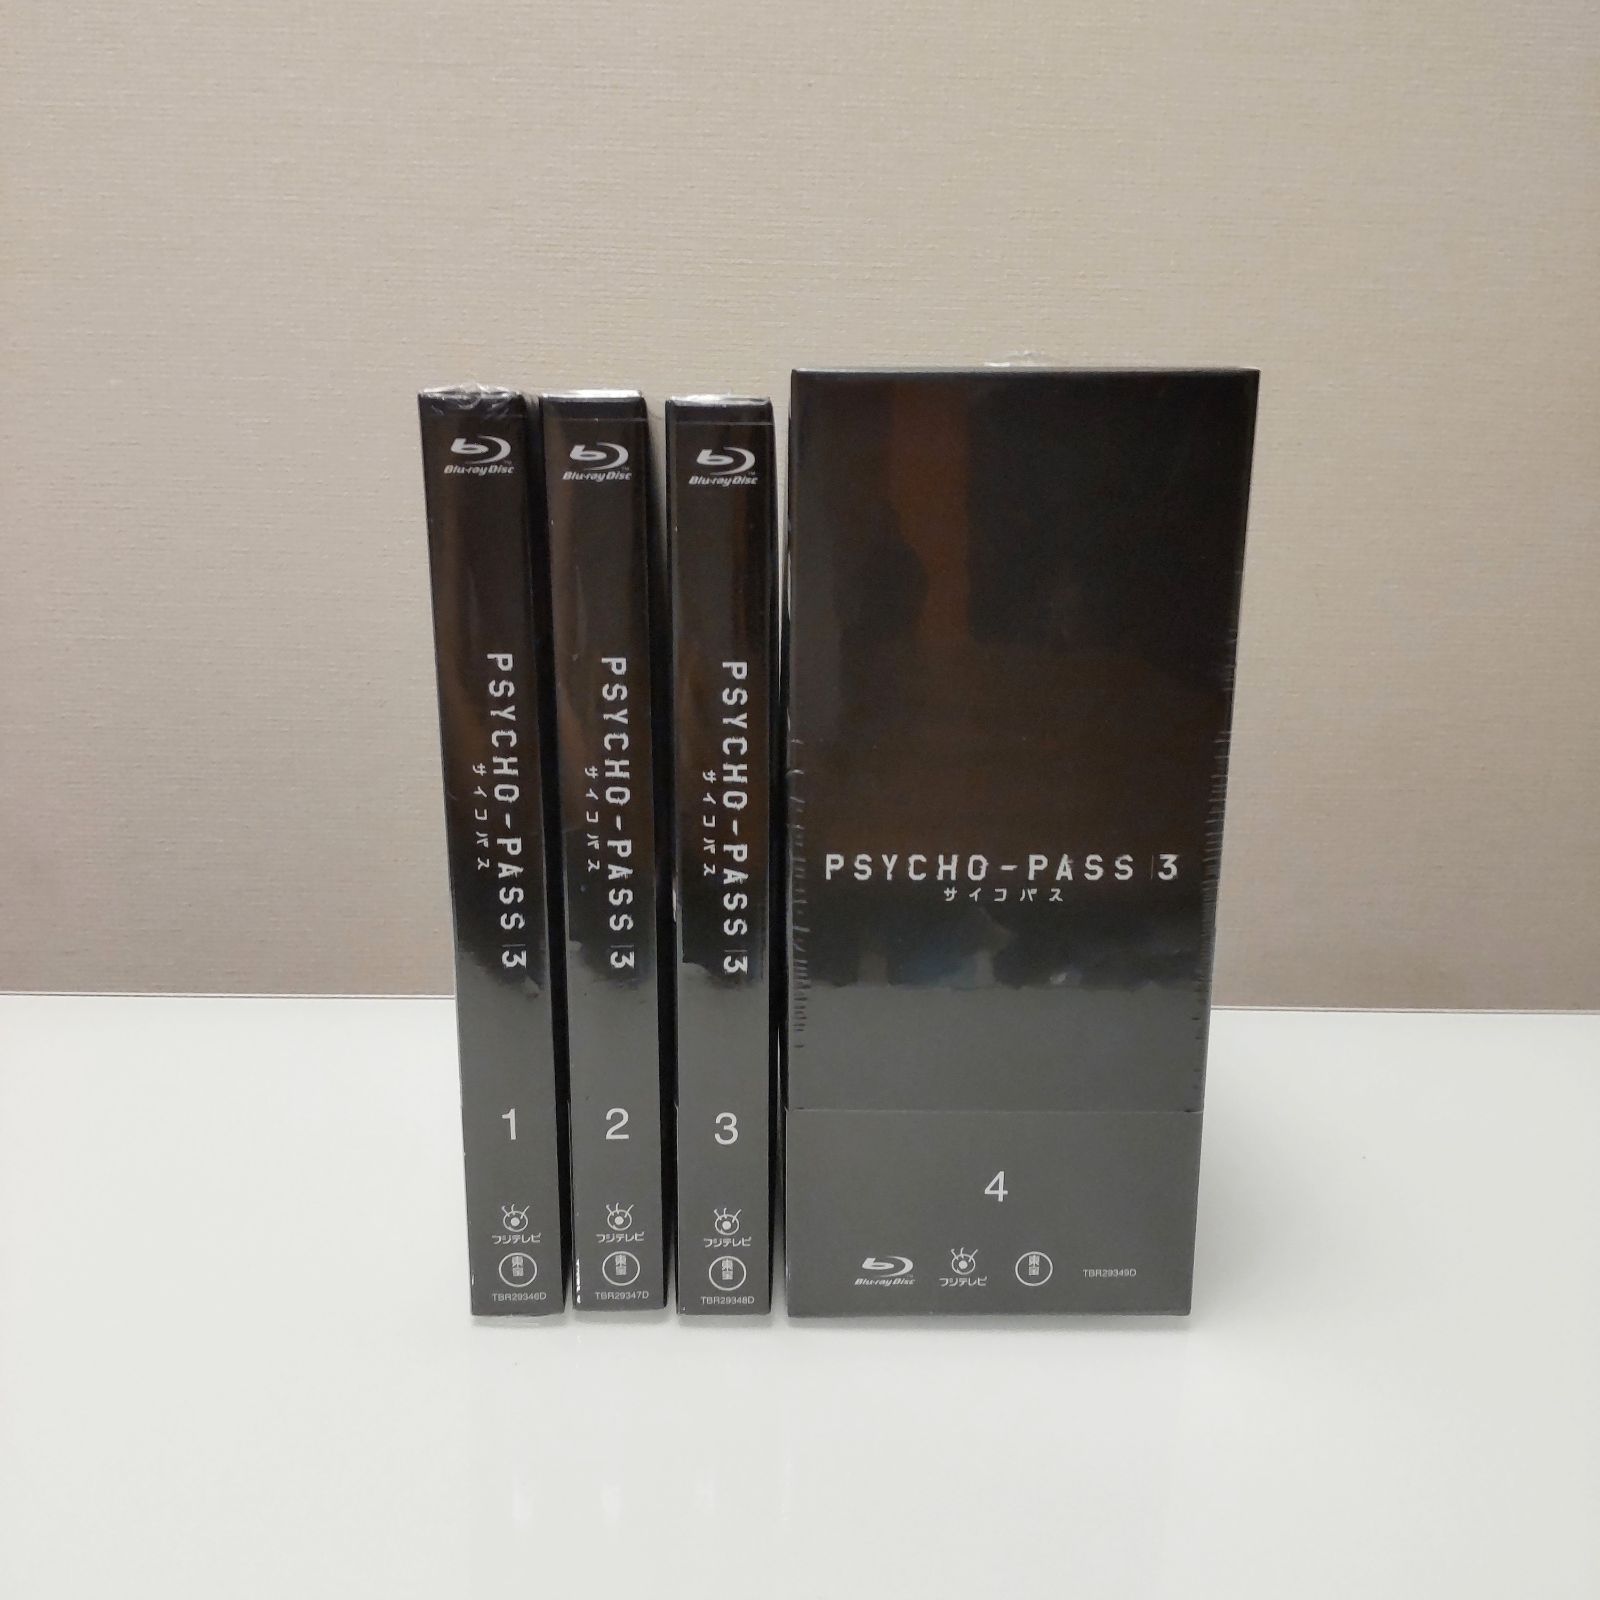 PSYCHO-PASS サイコパス 3 初回生産限定版 Blu-ray Vol.1-4 全4